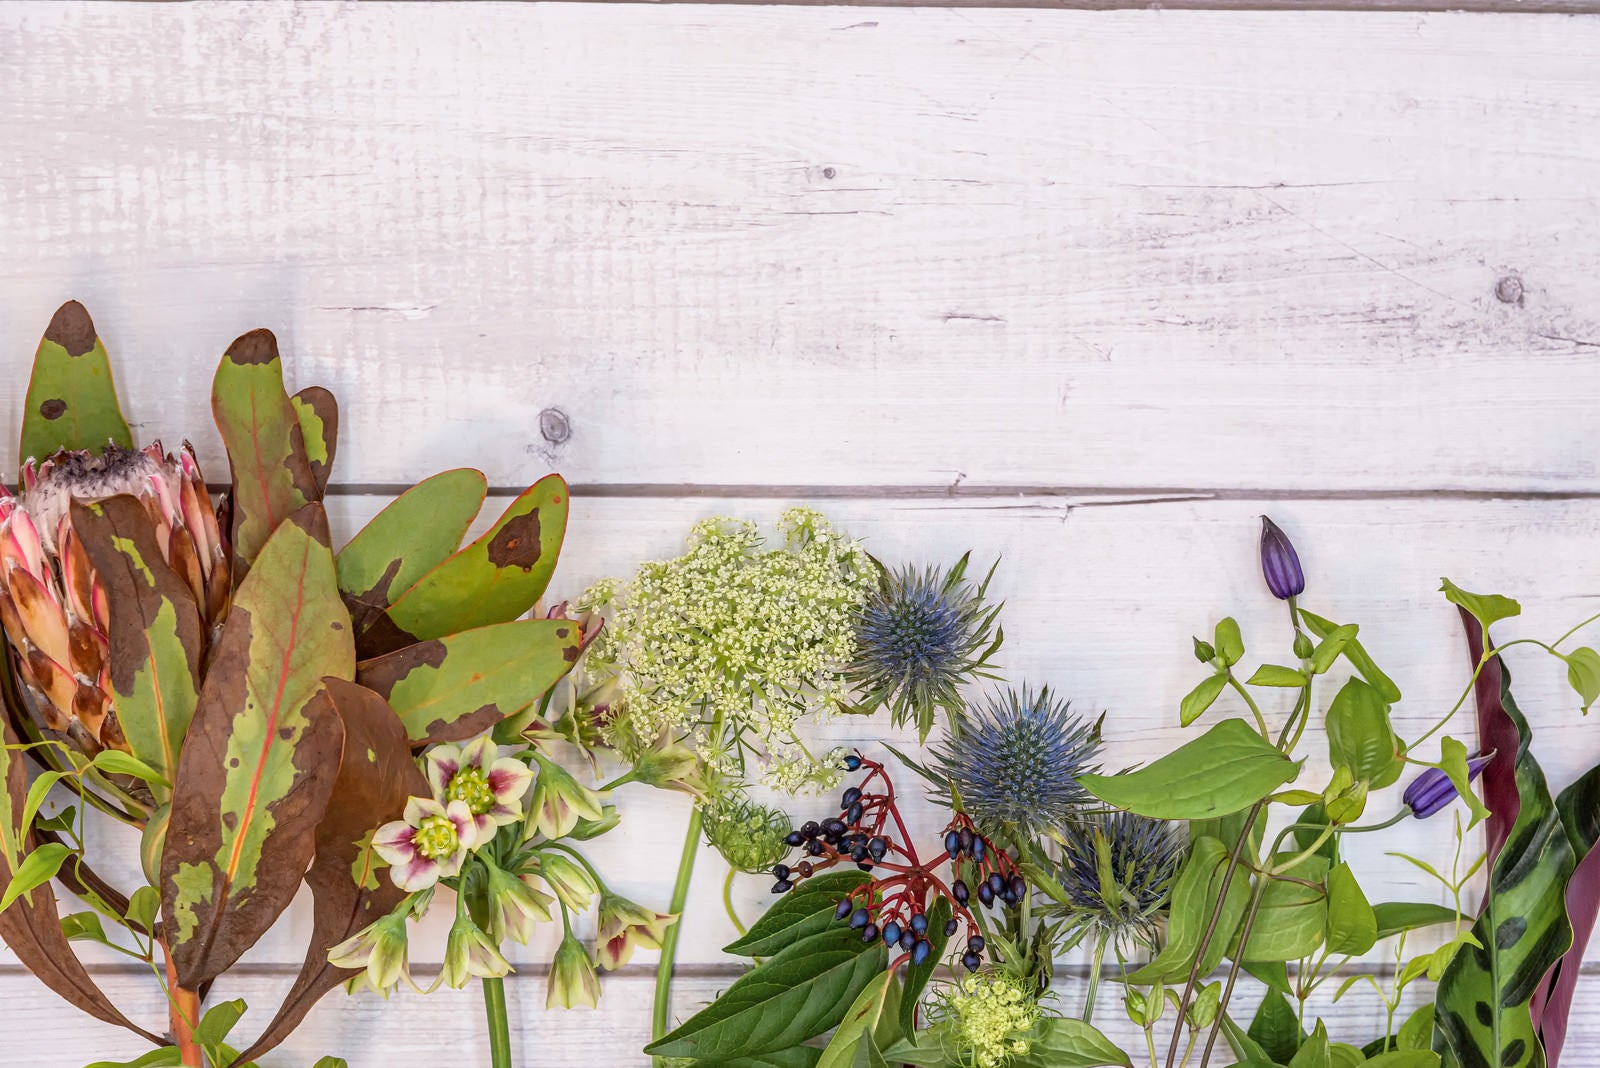 「落ち着いた色合いの花々(左からプロテア、アリウム、レースフラワー、ビバーナム、エリンジューム、クレマチス、リキュウソウ、カラテア)」の写真